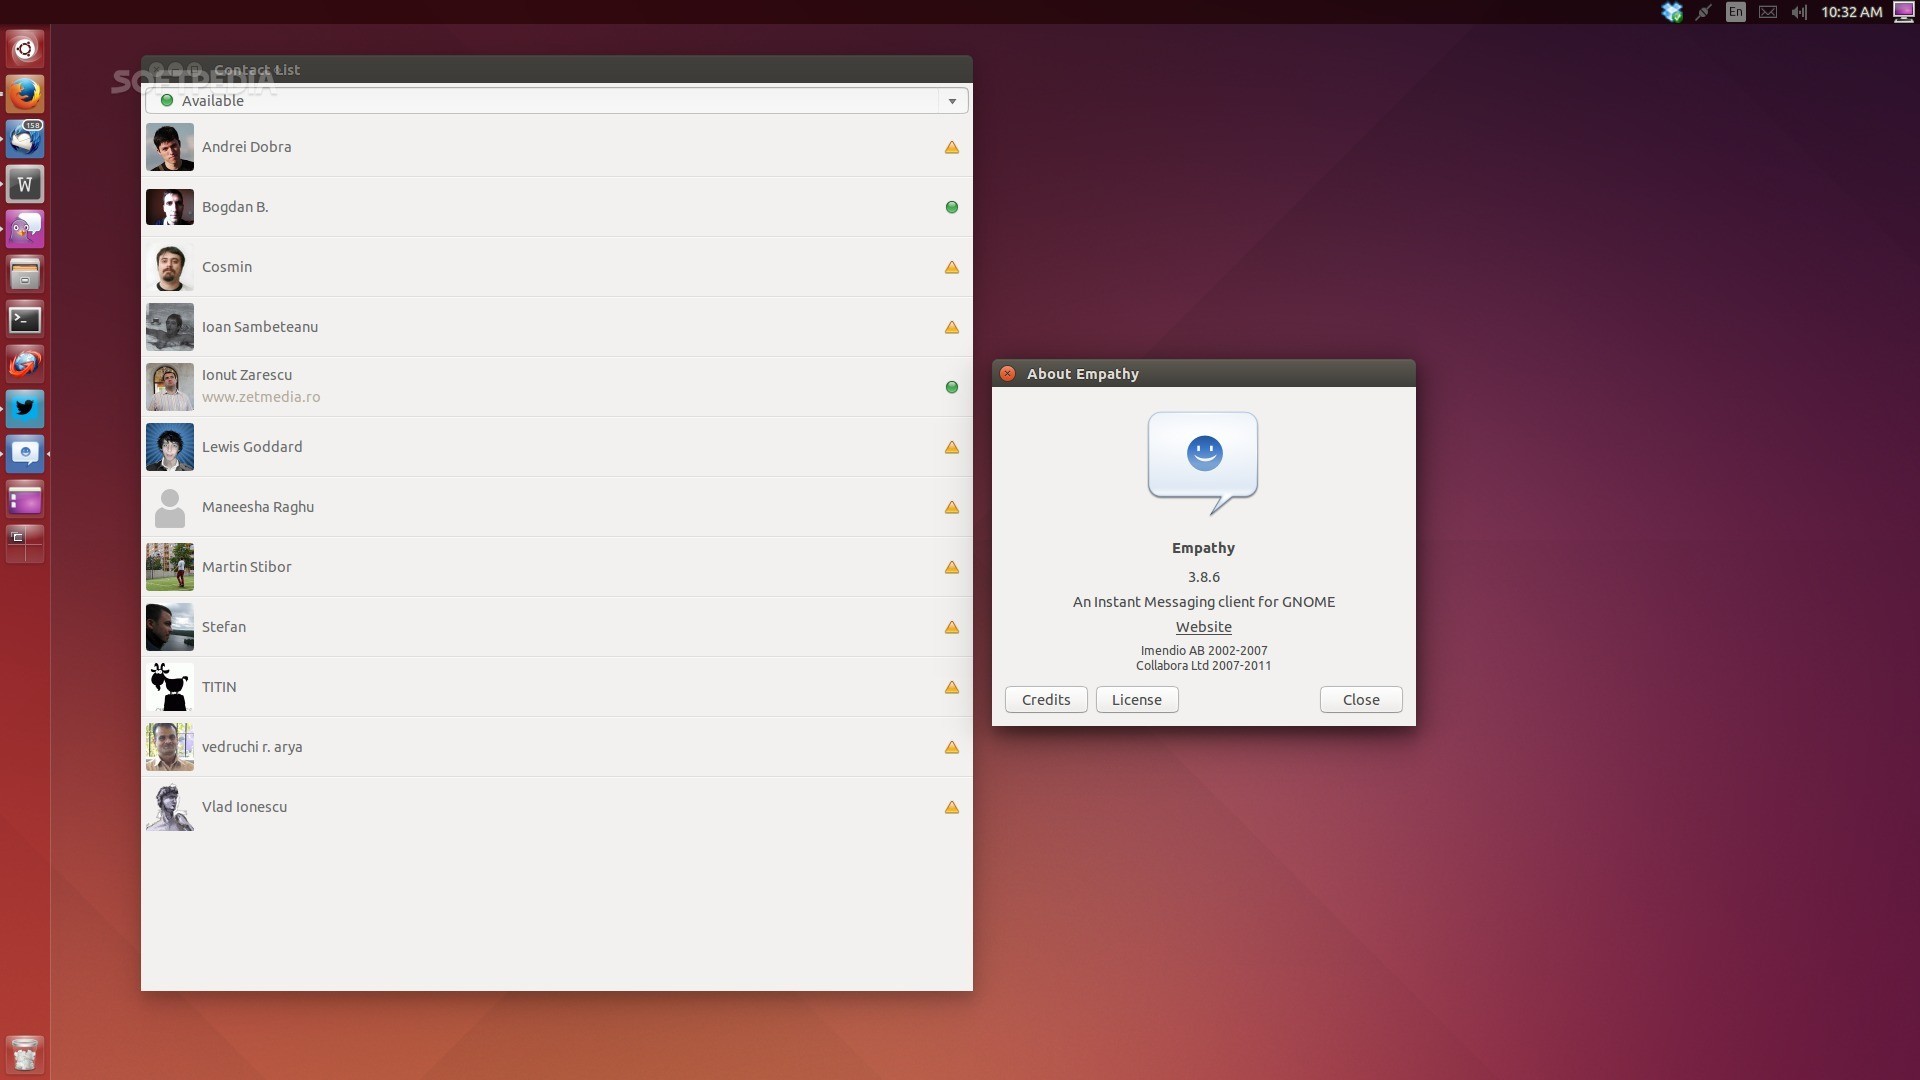 Ubuntu ubuntu 1804 iso download 64 bit free